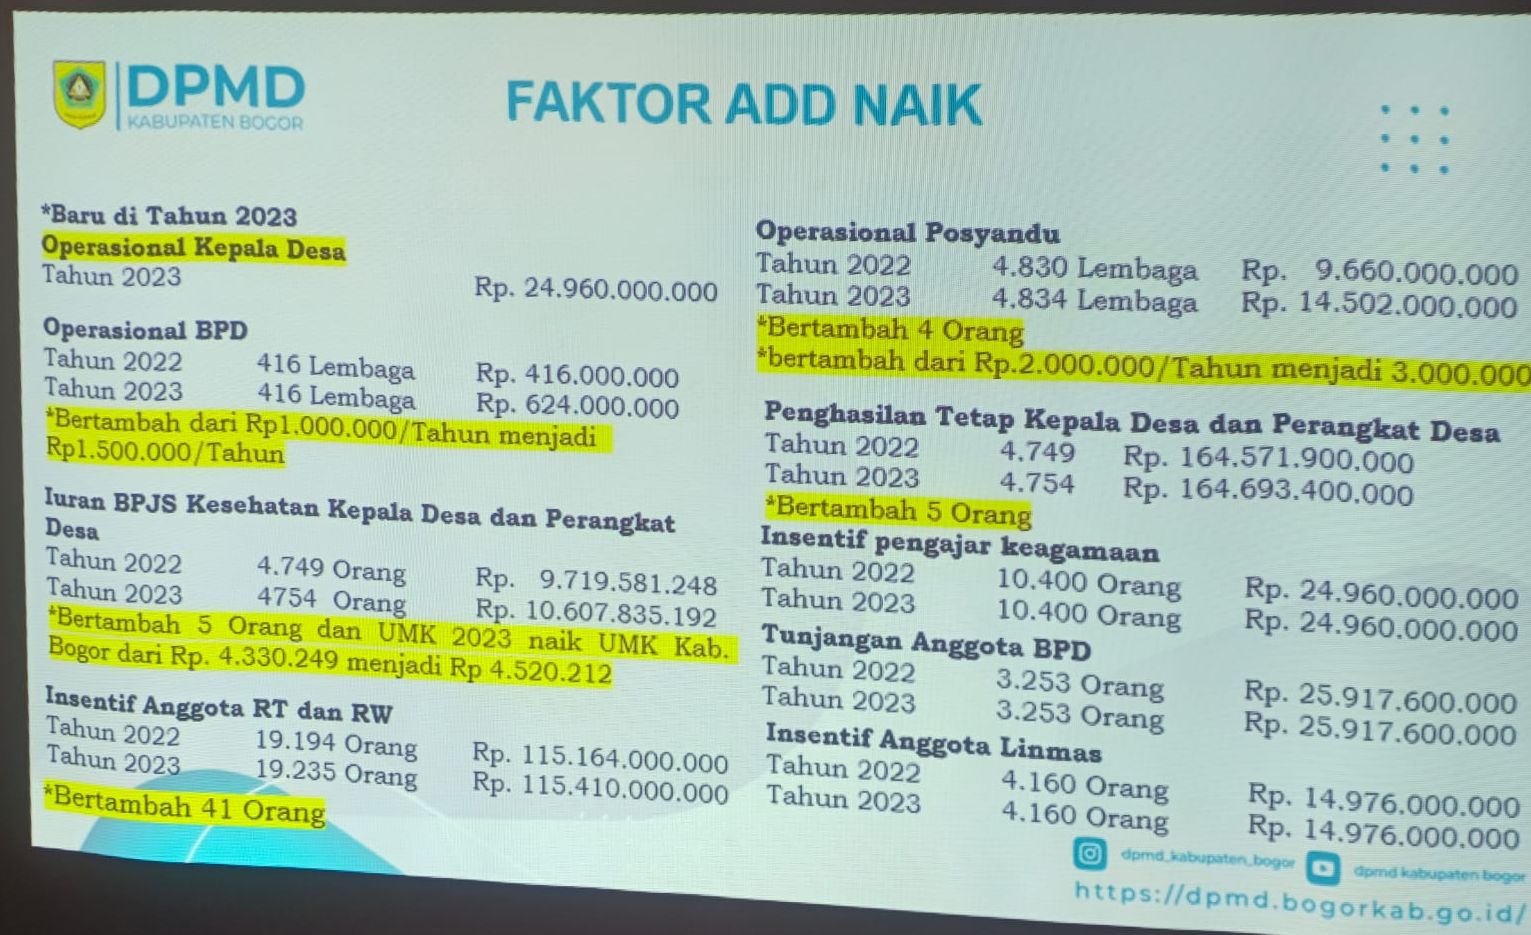 Screen capture faktor naik ADD Kabupaten Bogor tahun 2023 termasuk operasional kepala desa/Data DPMD Kabupaten Bogor 